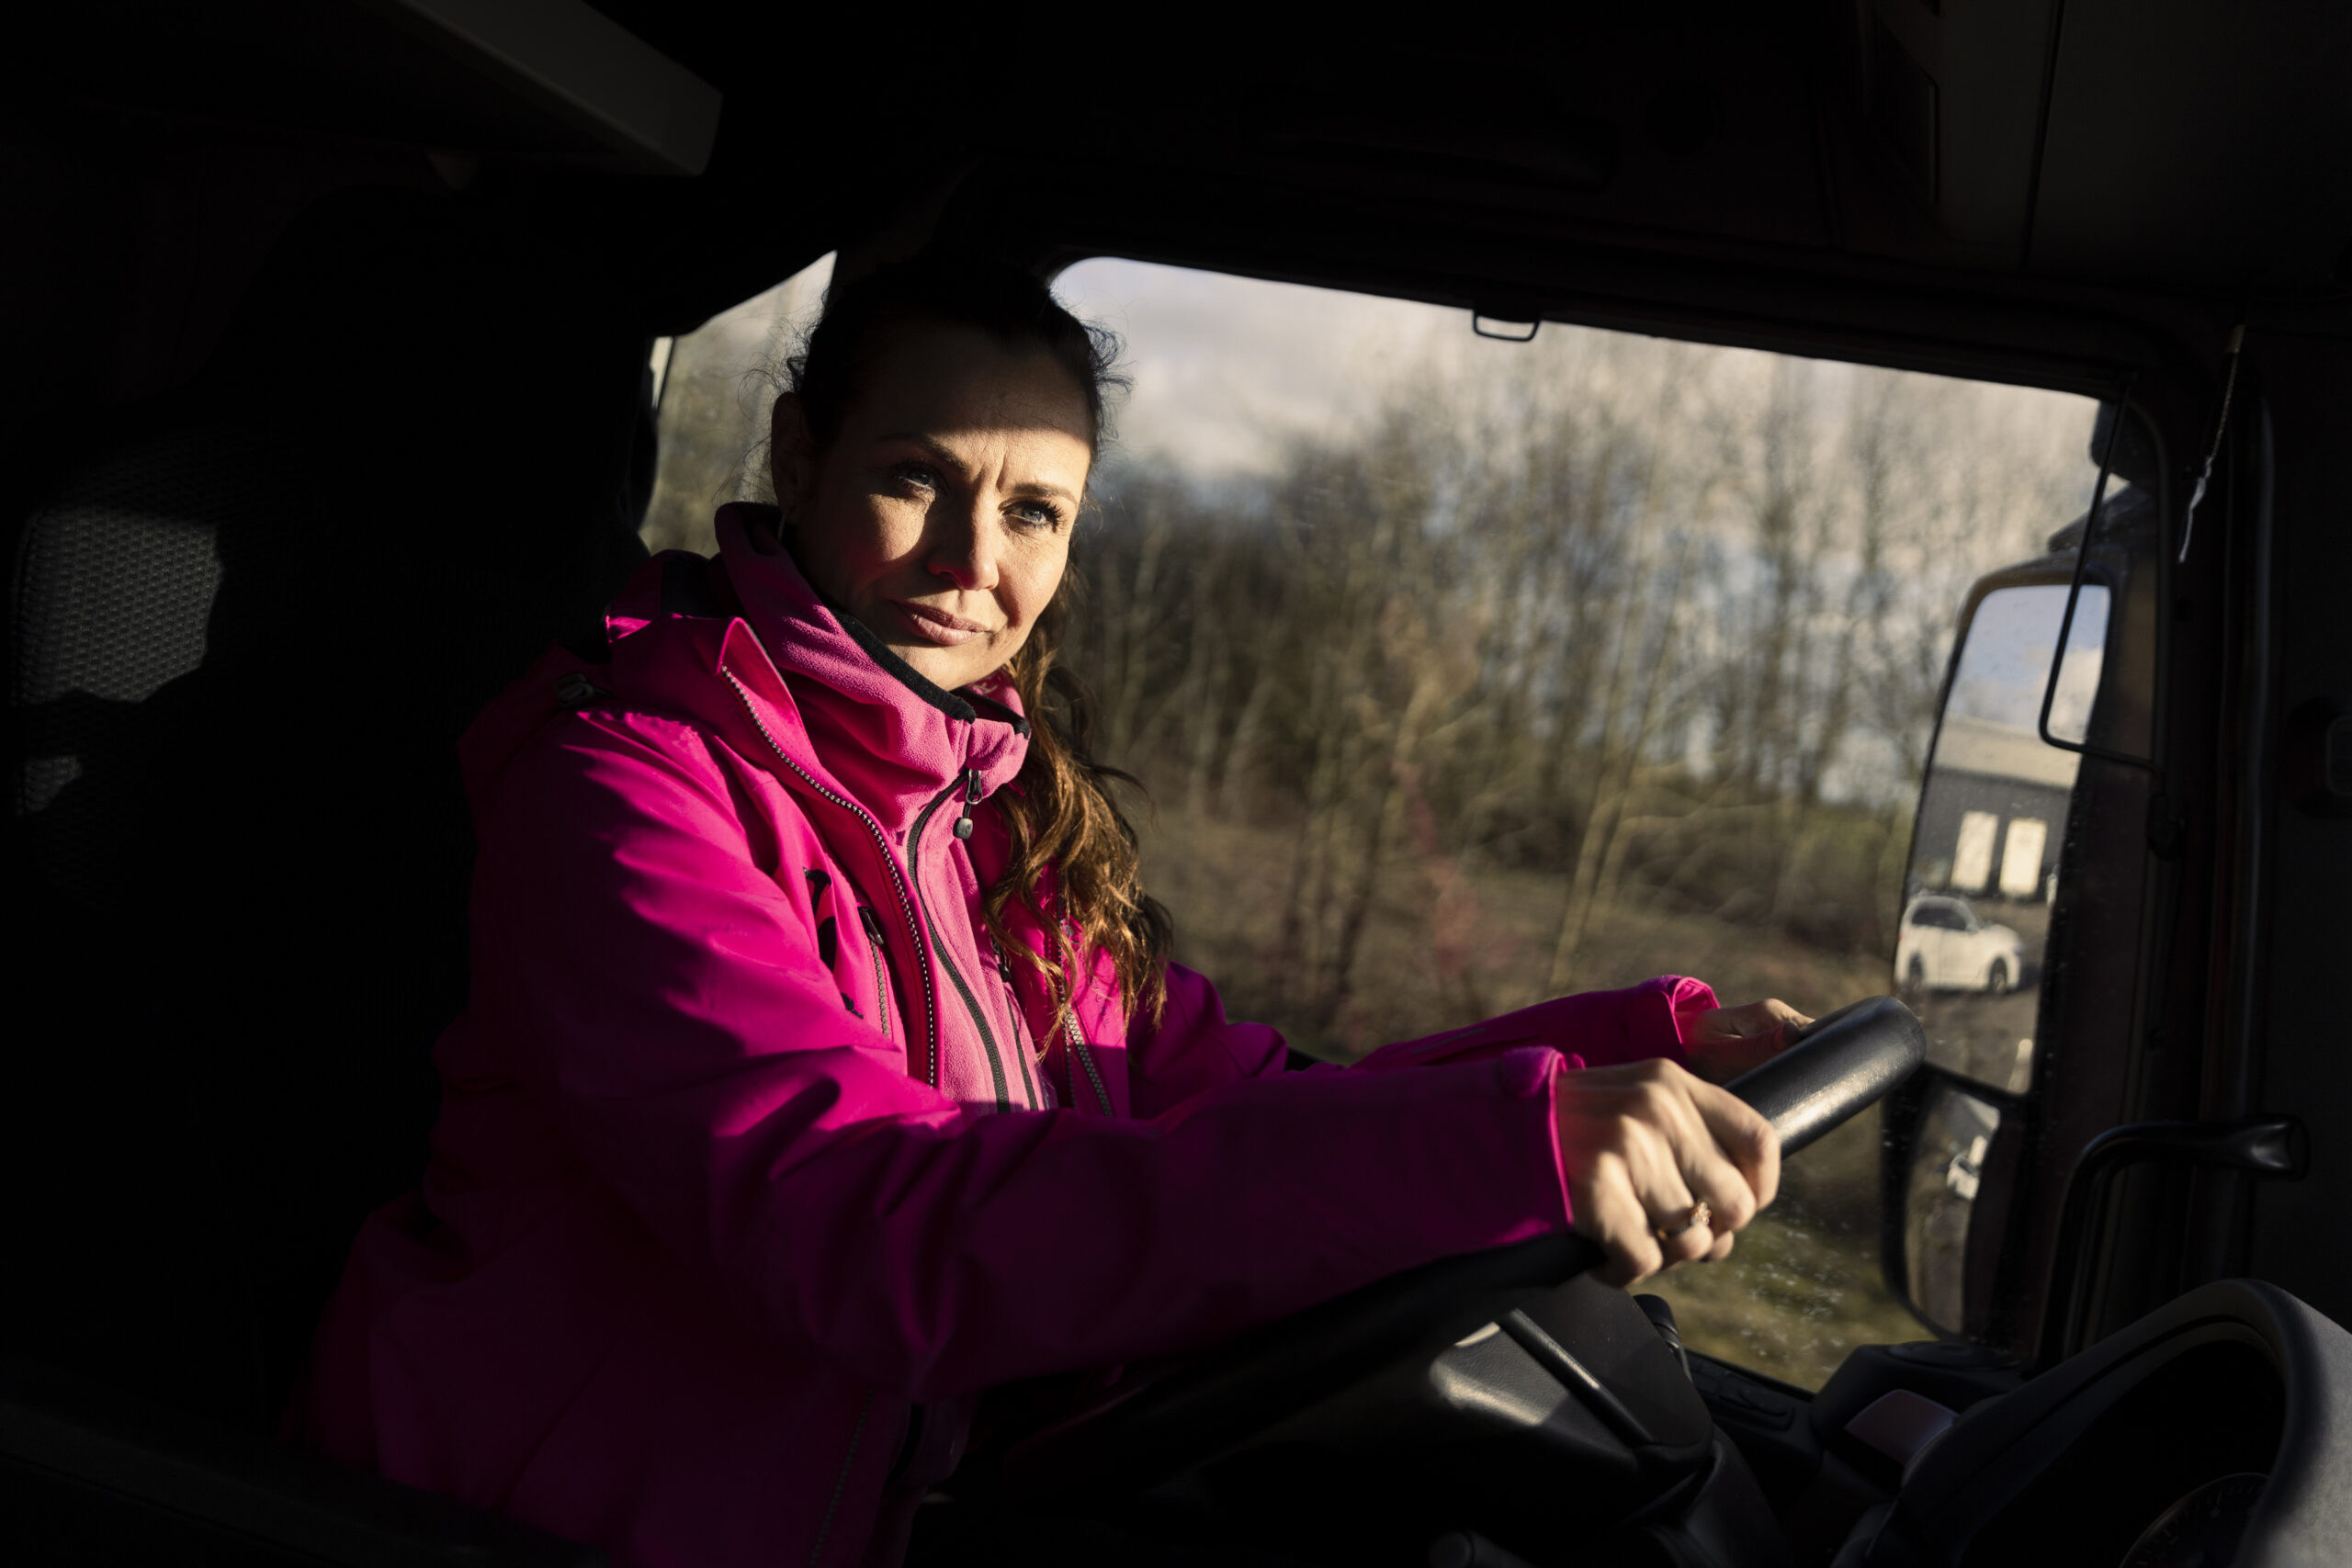 Jeanne Thylkjær Fjorback, aka Handywoman, bietet Workshops für Frauen an in denen sie lernen mit Werkzeugen umzugehen und Reparaturen im Haus zu erledigen. Für die Workshops hat sie einen Truck, LKW von MAN Top Used gekauft, in pink lackieren lassen und baut ihn in einen mobilen Tagungsraum um. Hadsten, Dänemark, 2022, Foto: Jonas Wresch